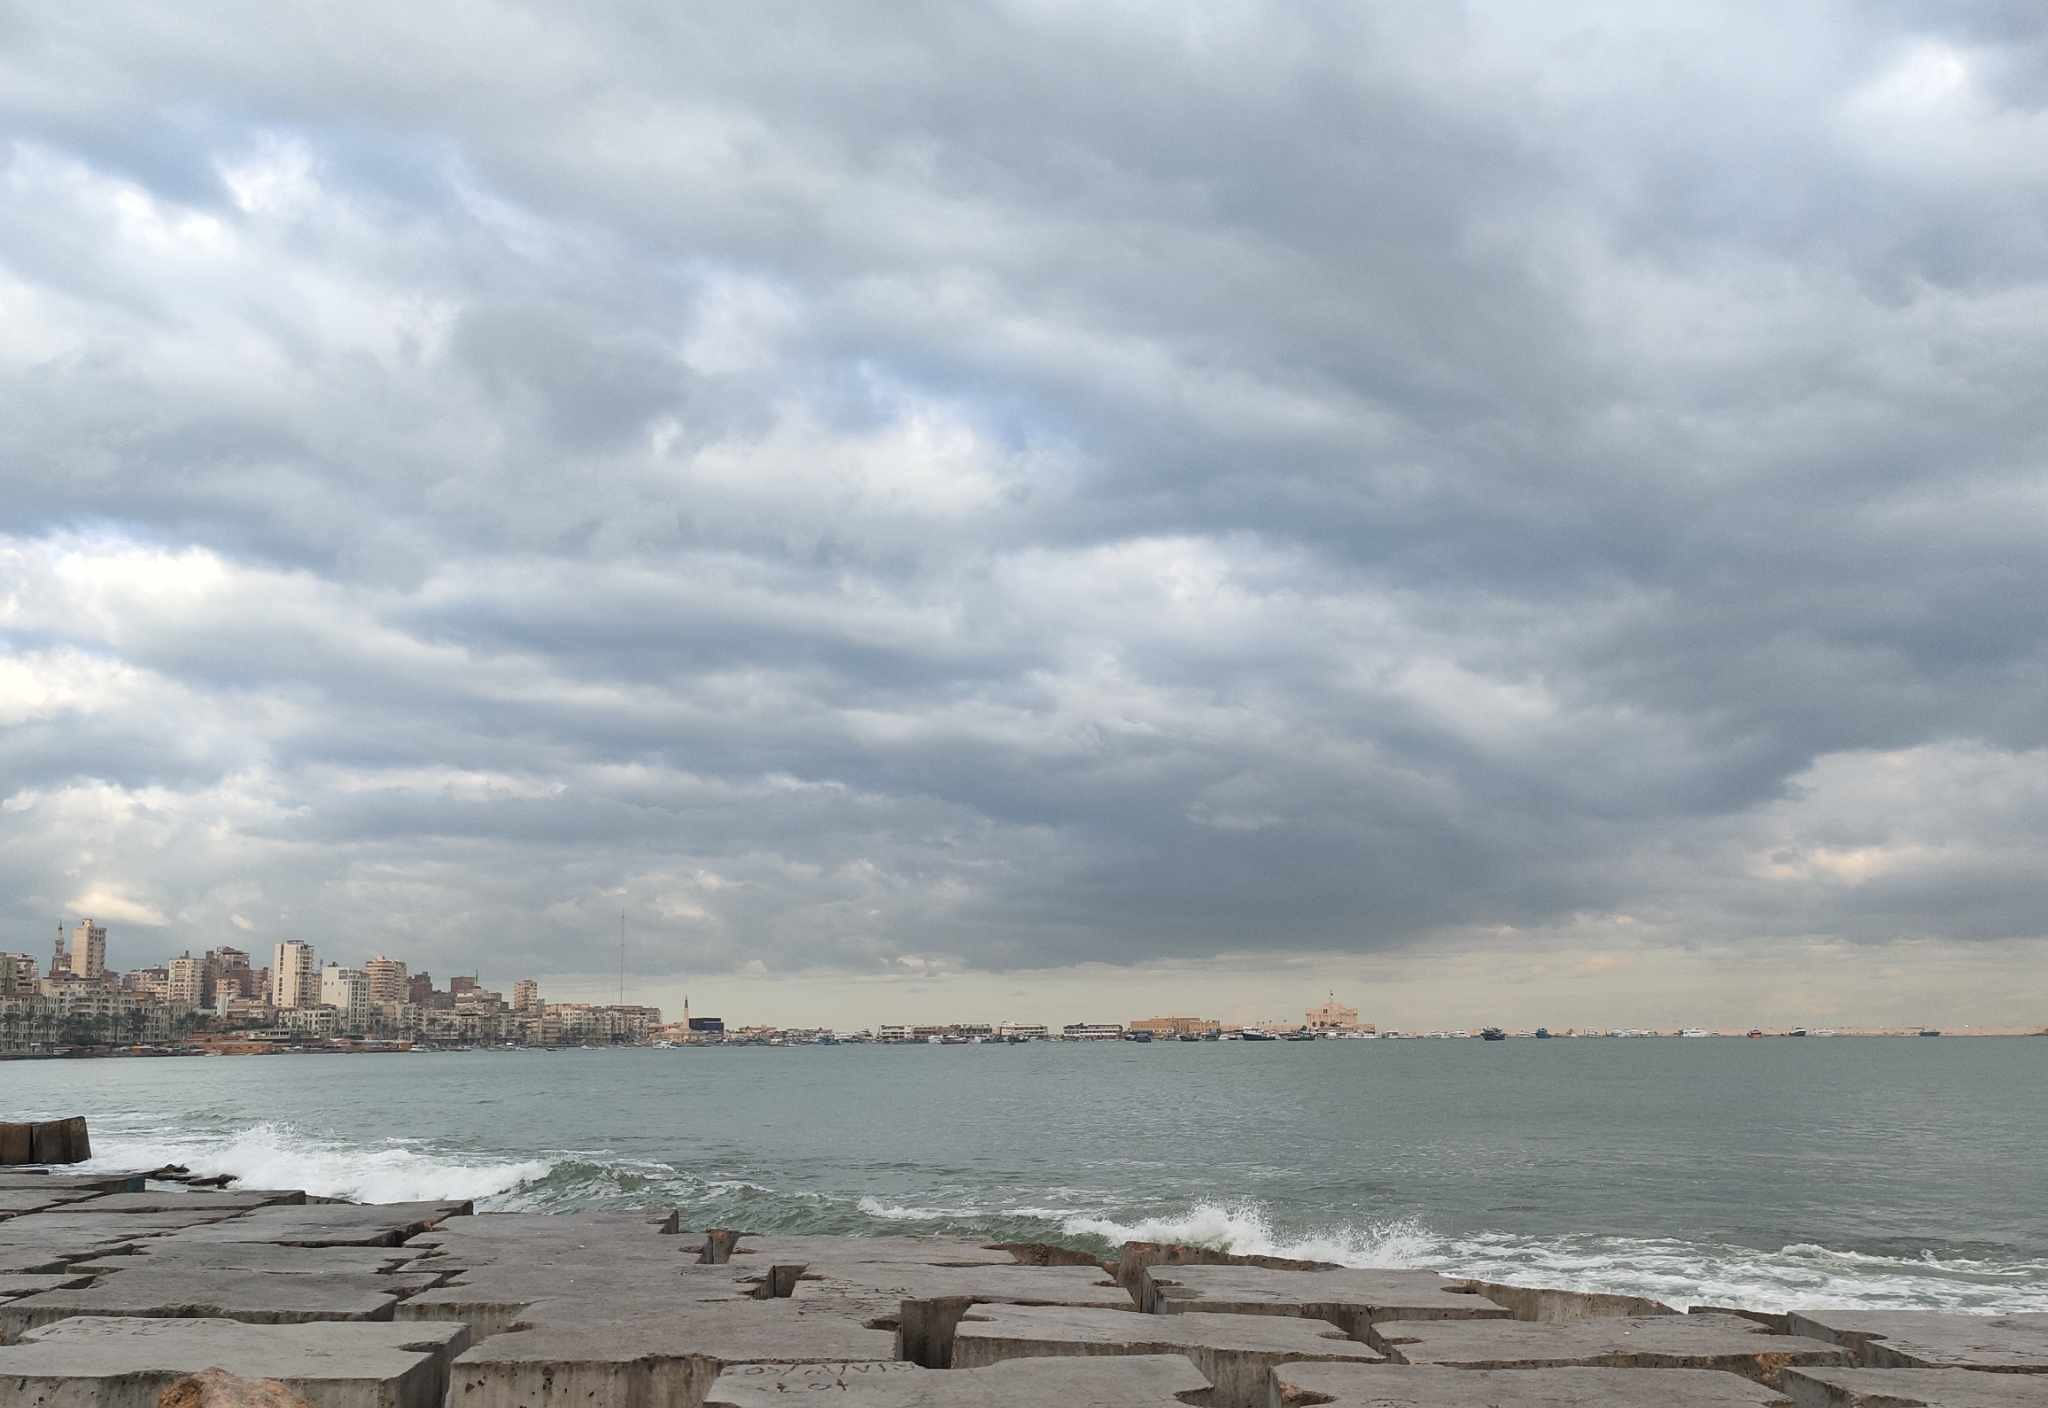 سحب منخفضة في الإسكندرية وطقس مائل للبرودة